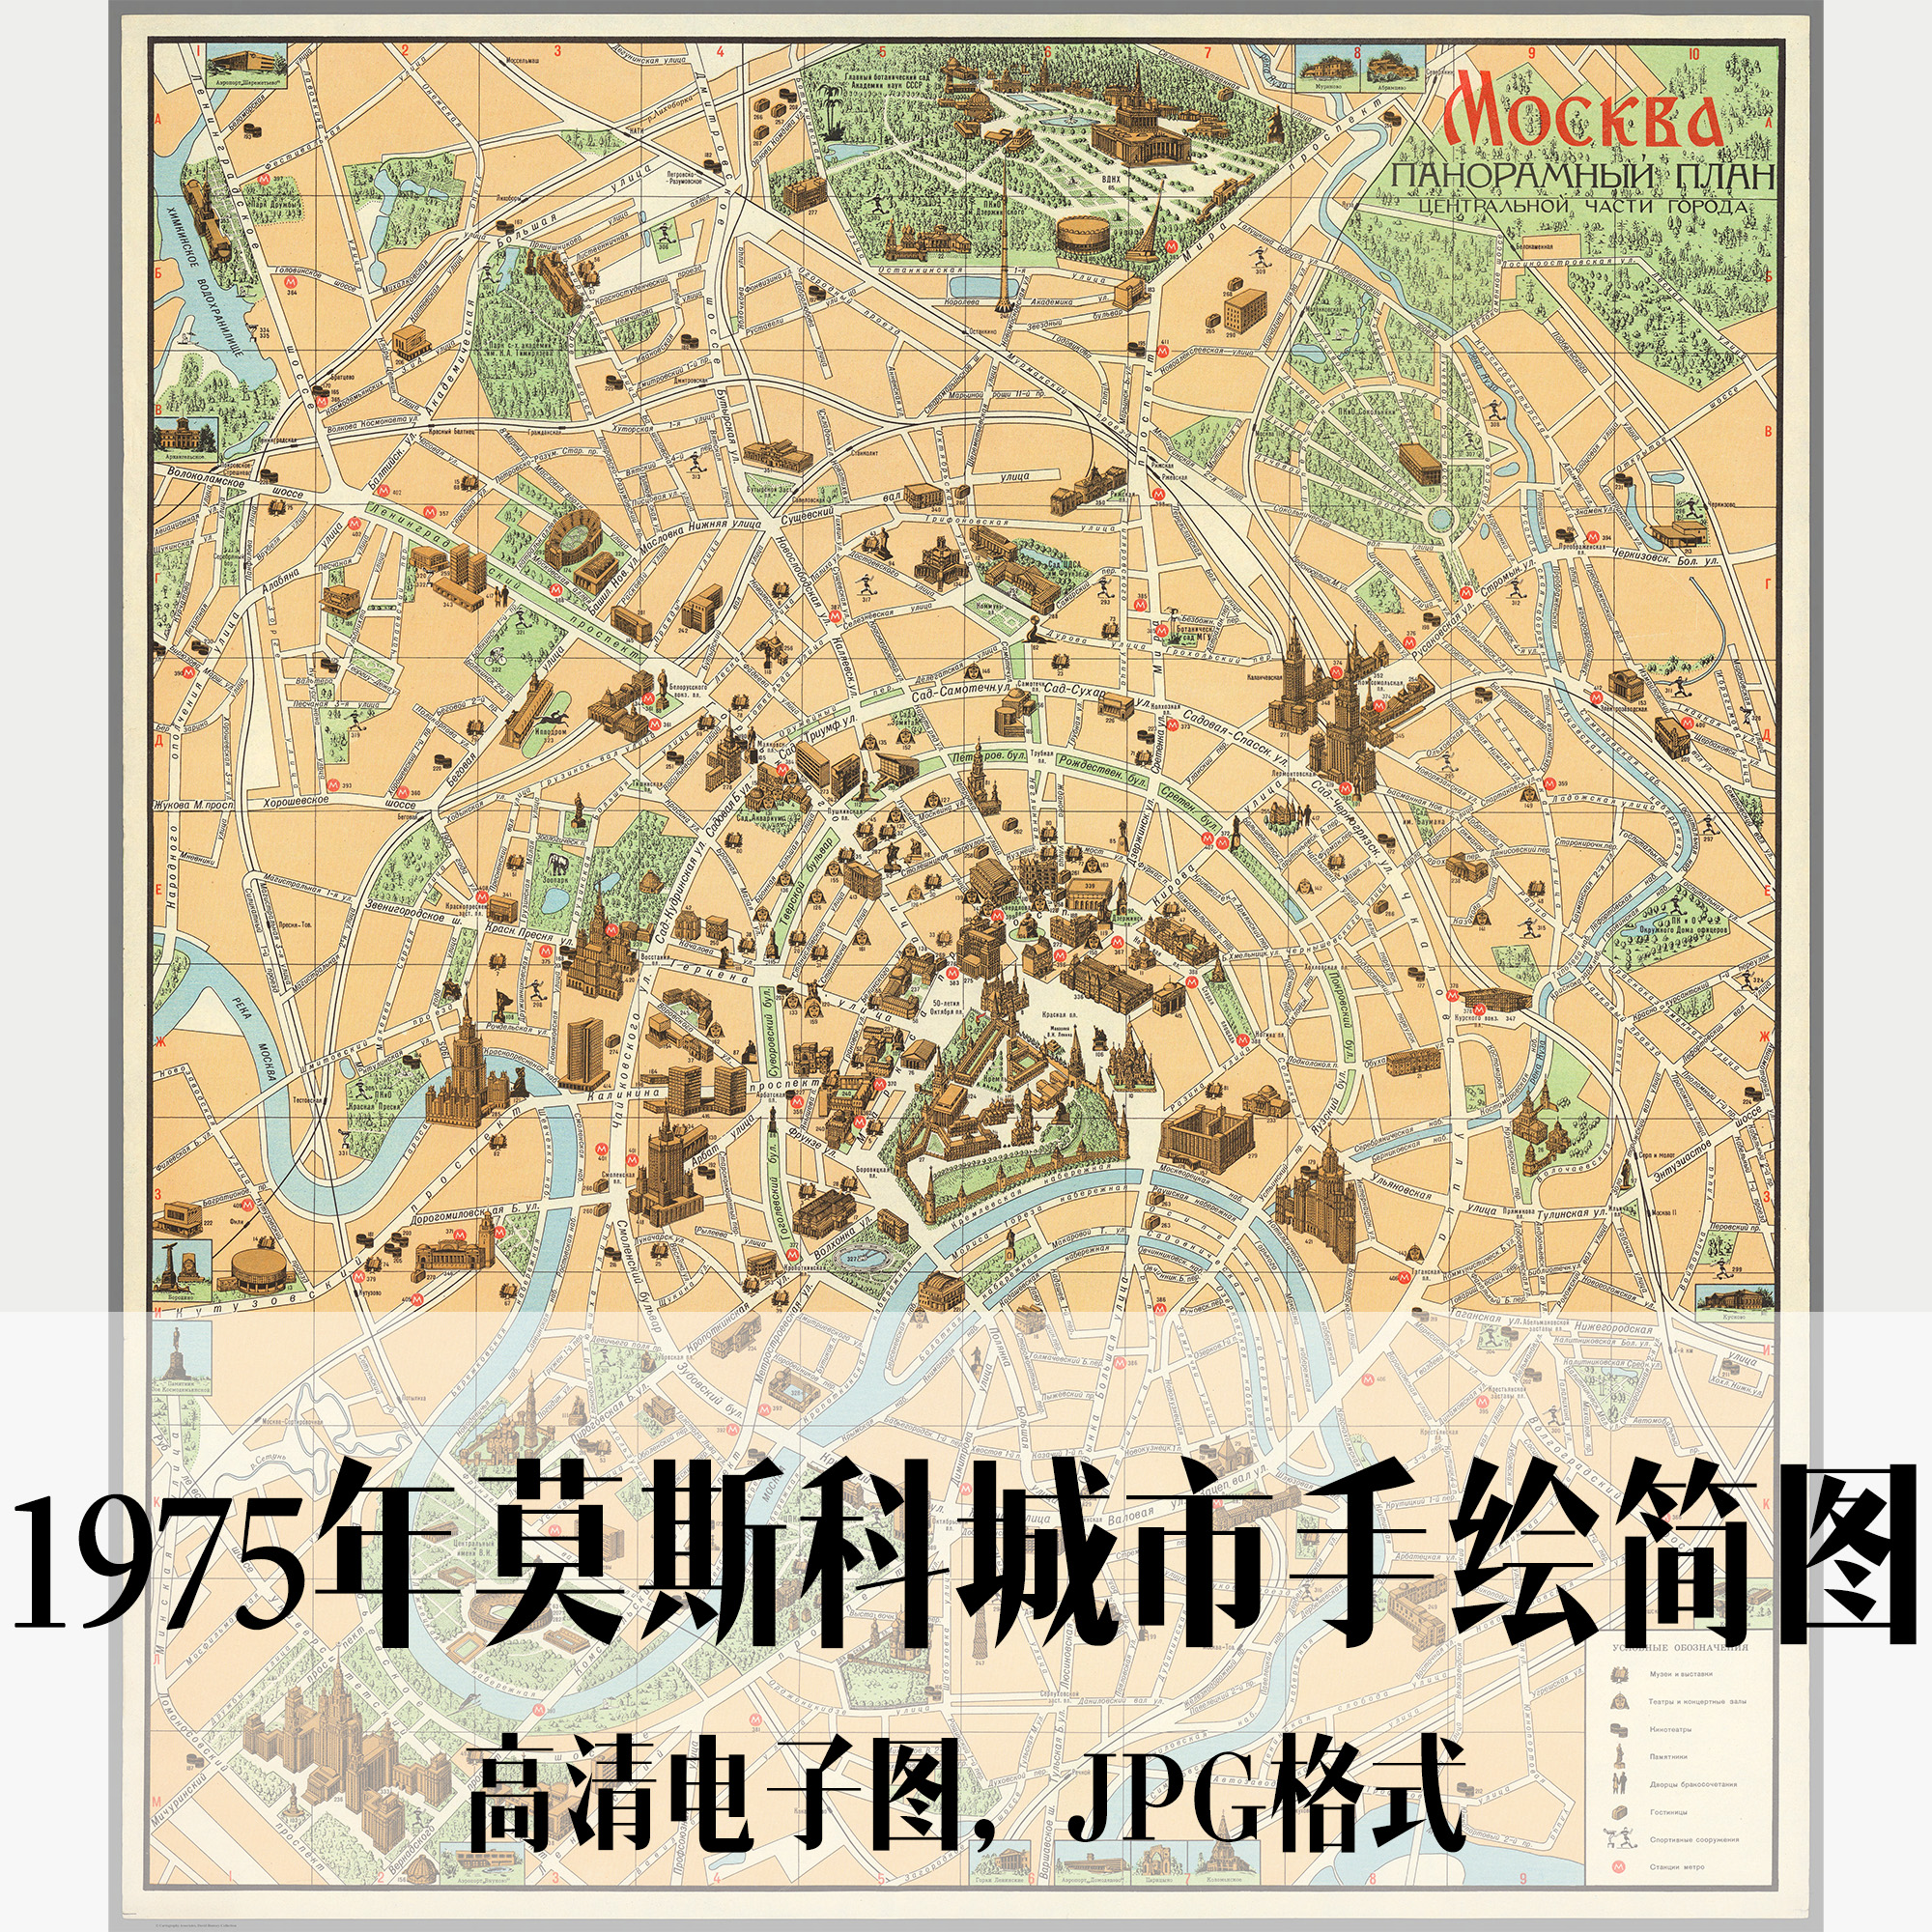 1975年莫斯科城市手绘简图俄罗斯电子老地图历史地理资料素材